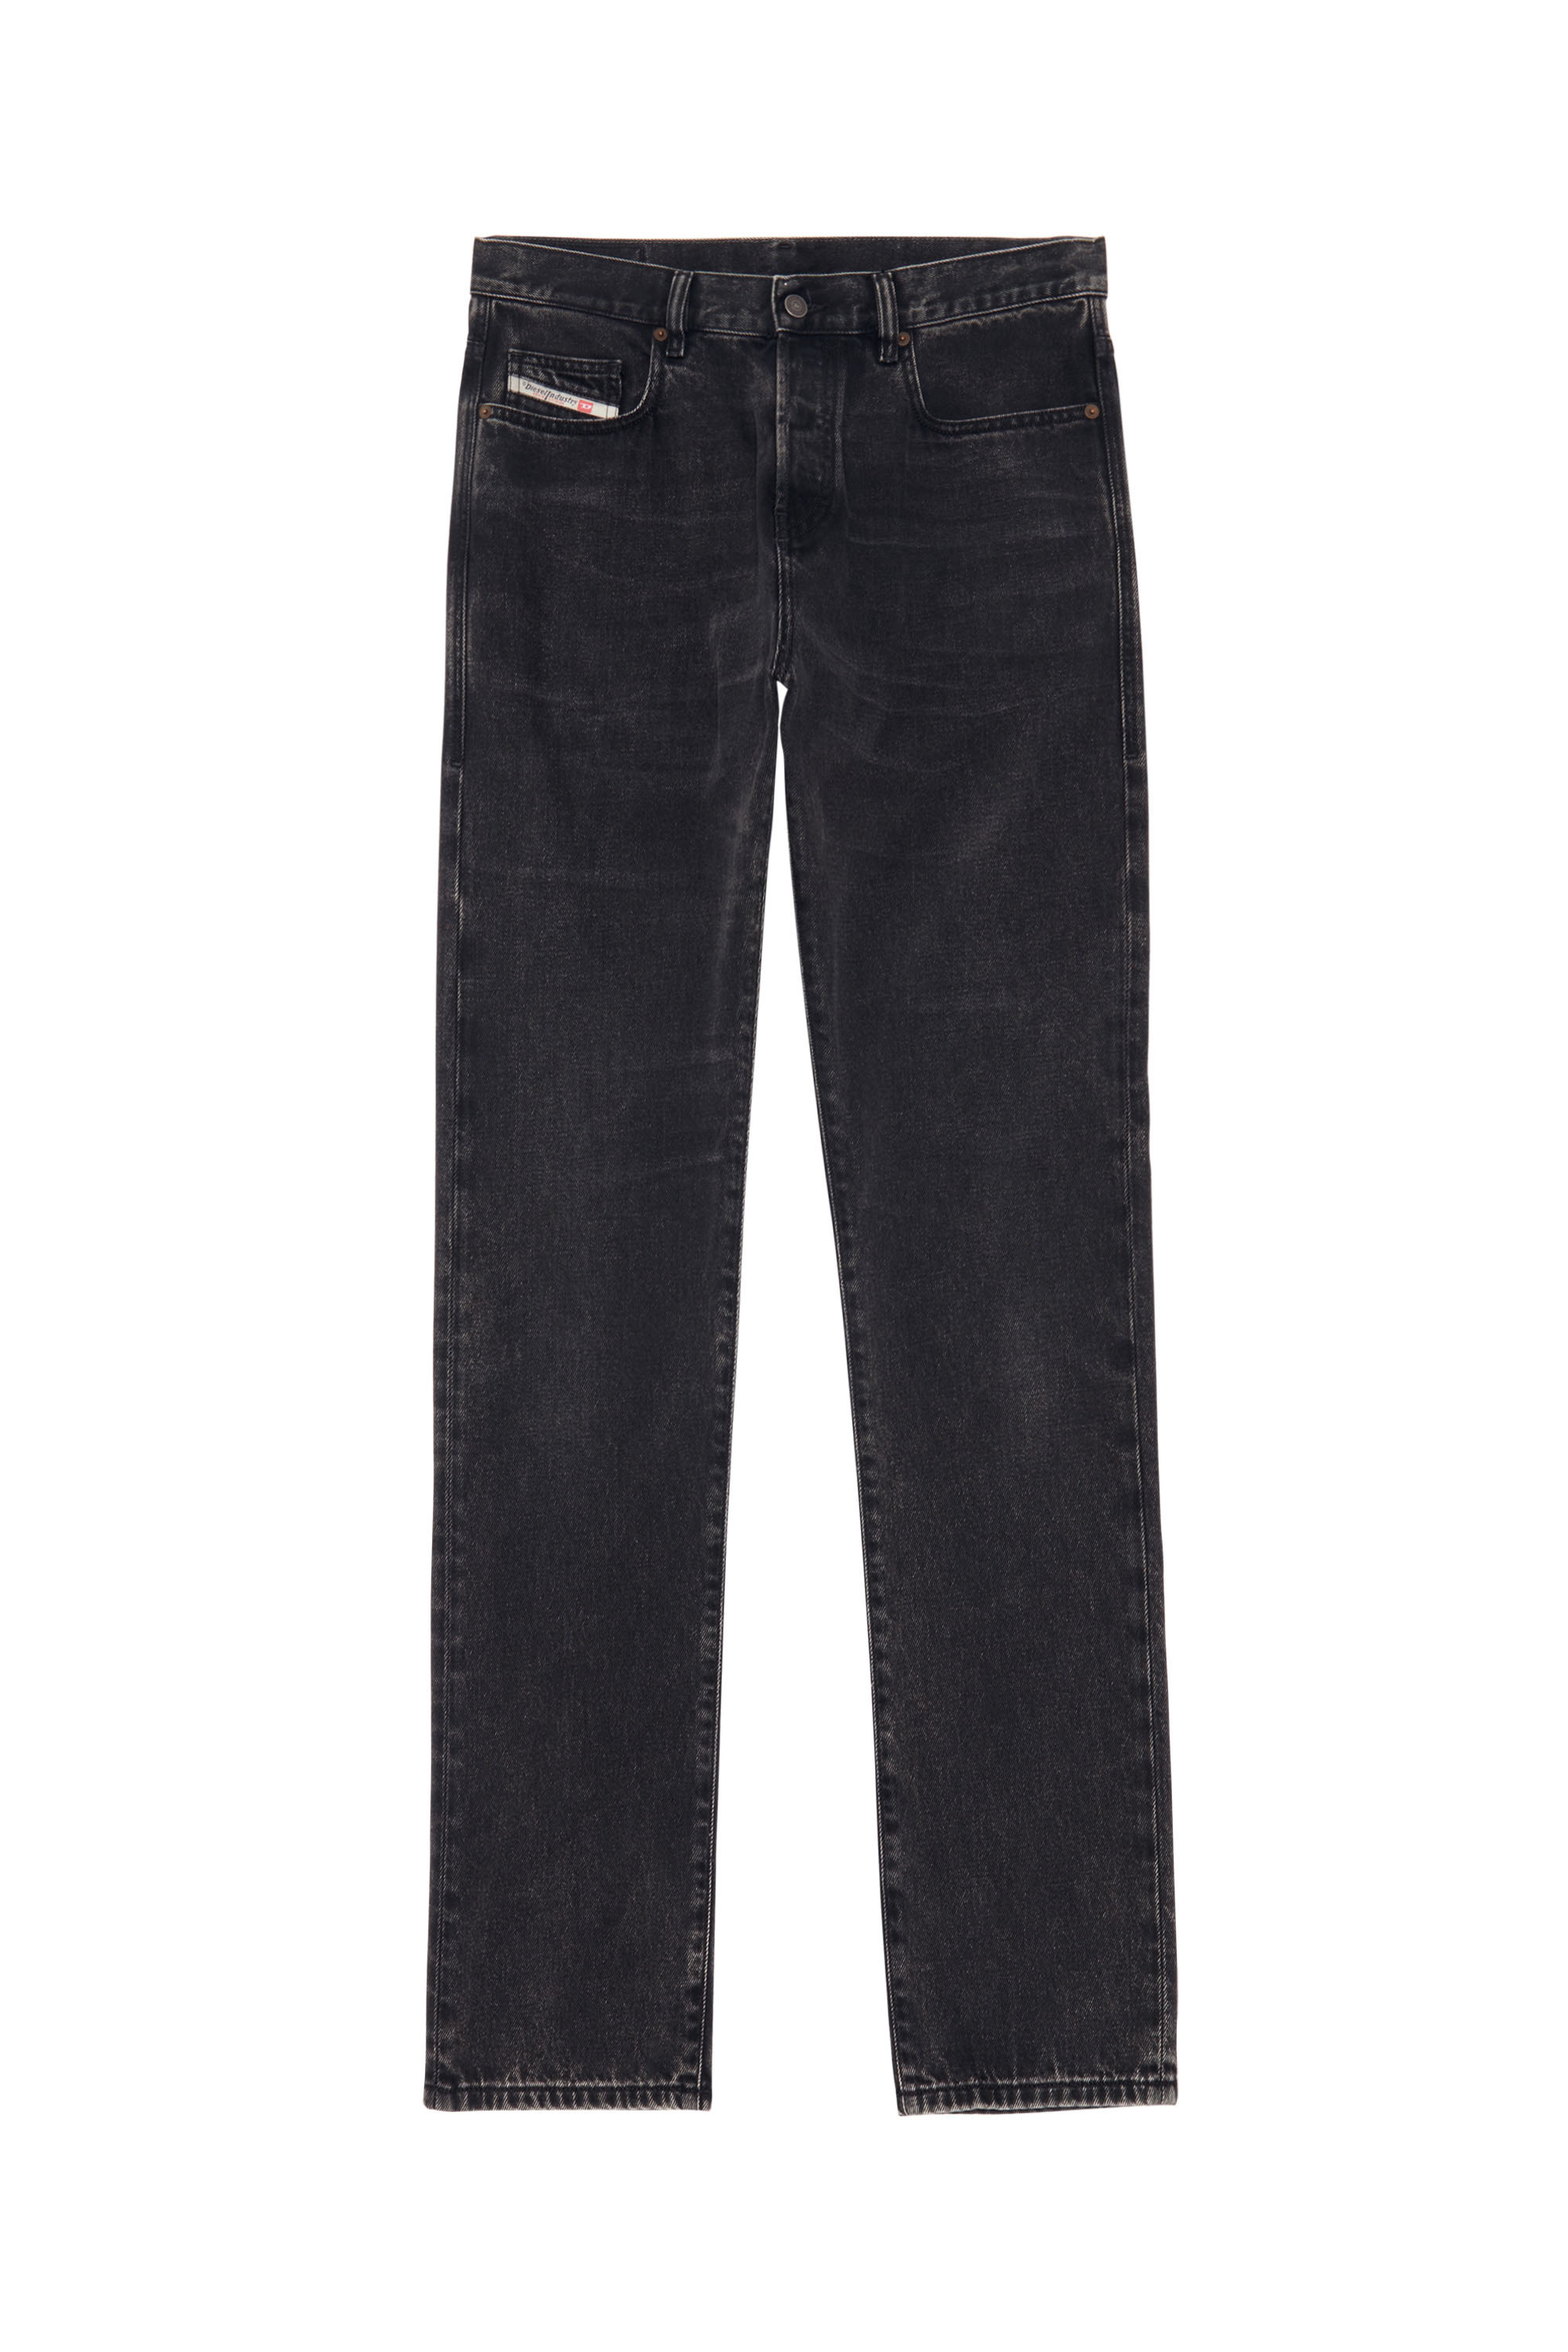 Skinny Jeans 2015 Babhila Z870G, Schwarz/Dunkelgrau - Jeans